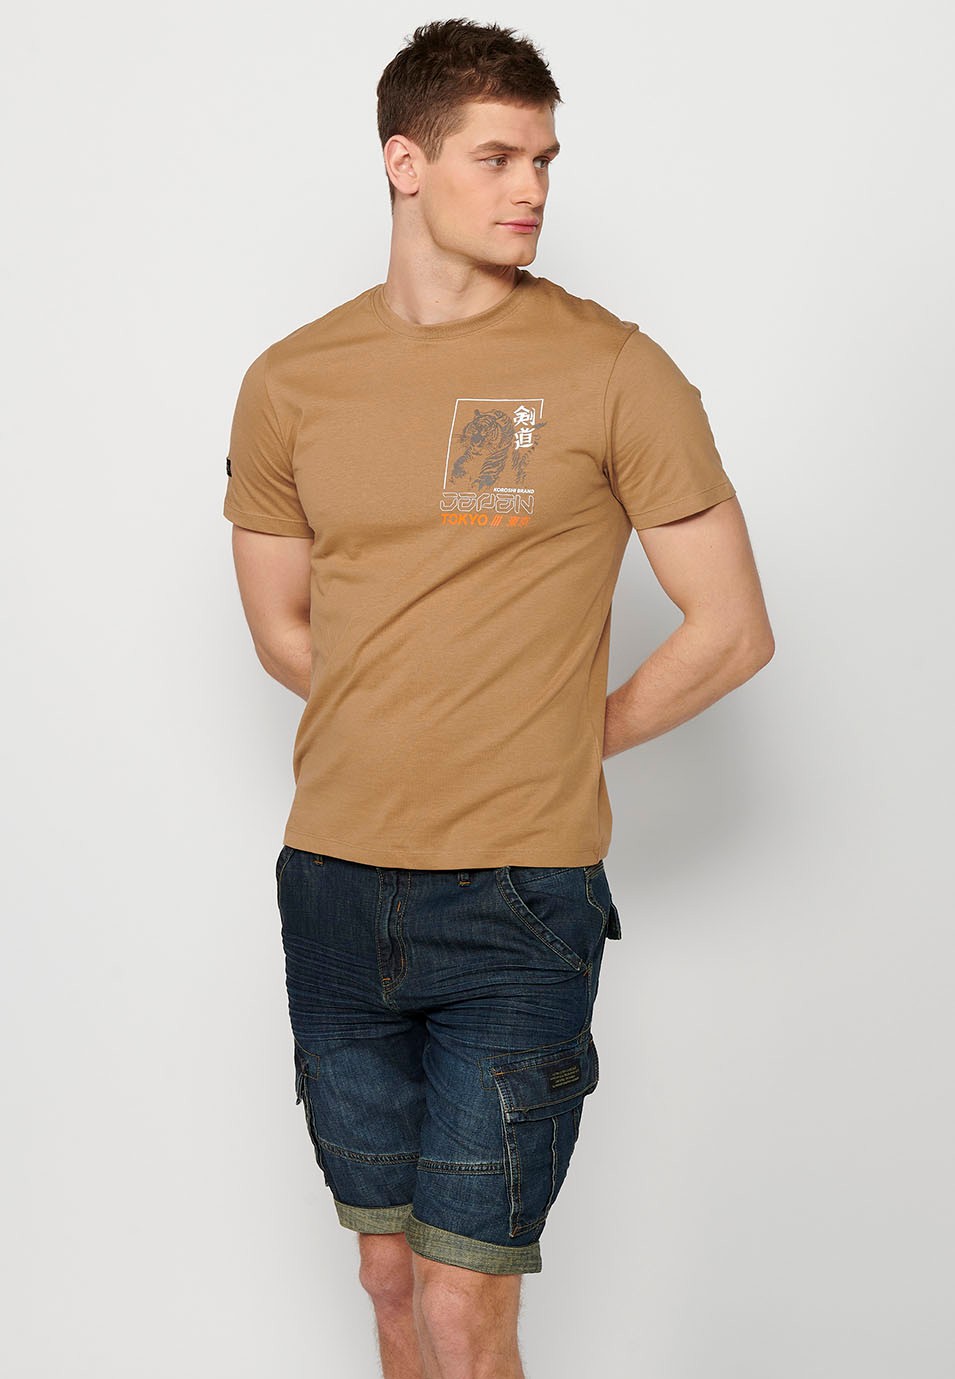 Kurzärmeliges Baumwoll-T-Shirt mit Dschungel-Tigger-Aufdruck auf dem Rücken, Kamelfarbe für Herren